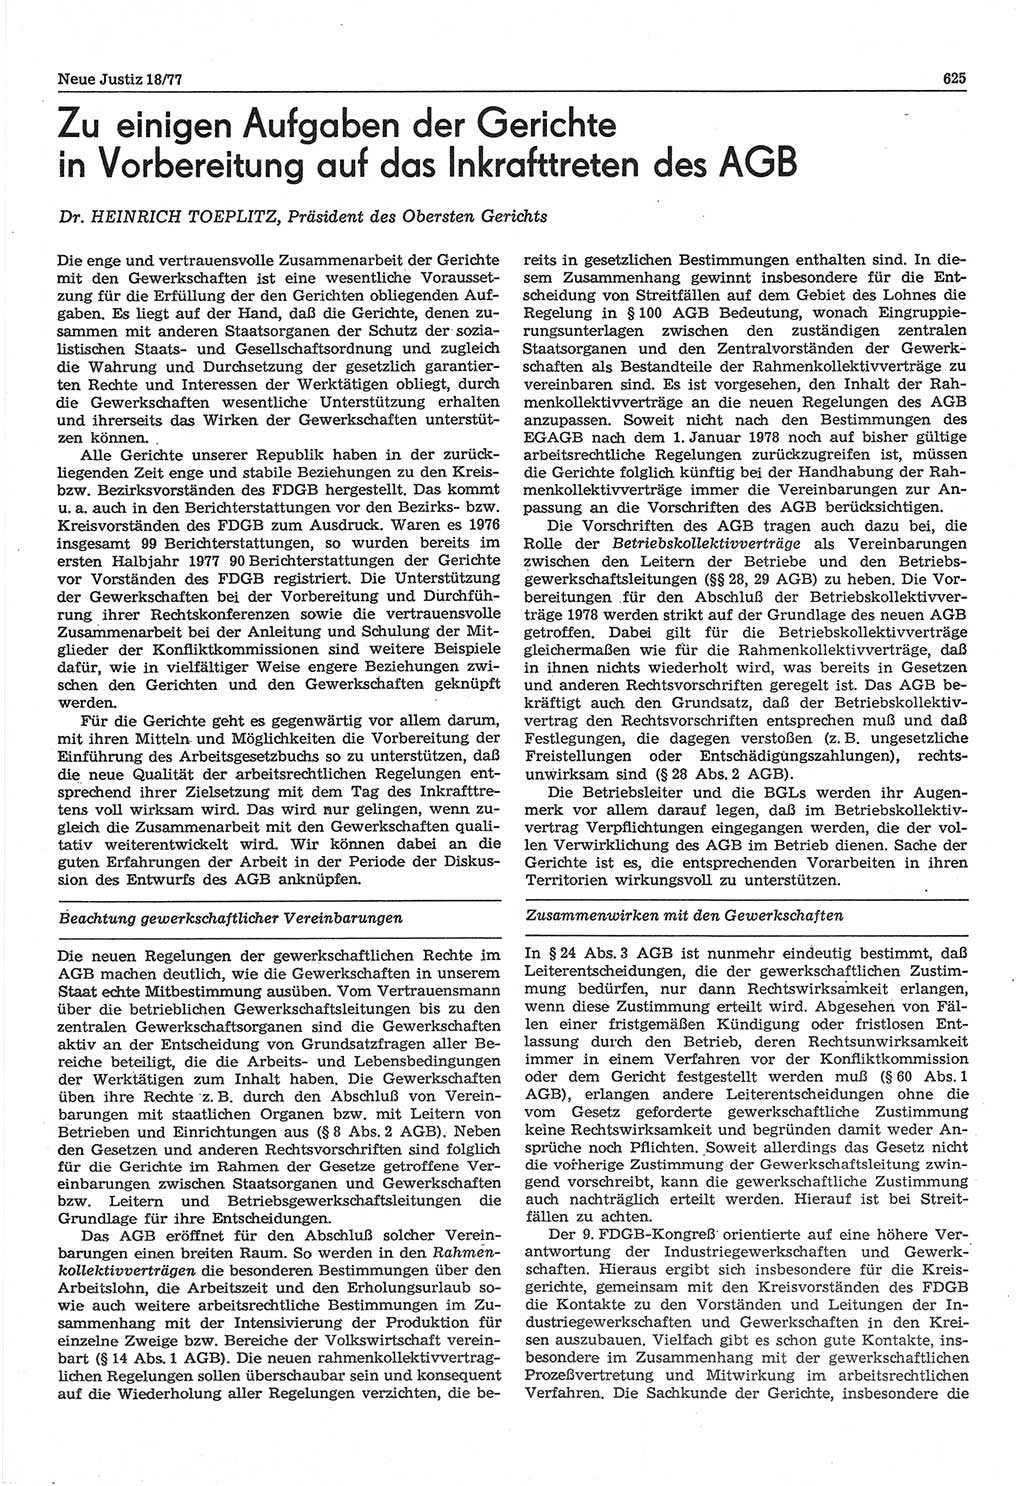 Neue Justiz (NJ), Zeitschrift für Recht und Rechtswissenschaft-Zeitschrift, sozialistisches Recht und Gesetzlichkeit, 31. Jahrgang 1977, Seite 625 (NJ DDR 1977, S. 625)